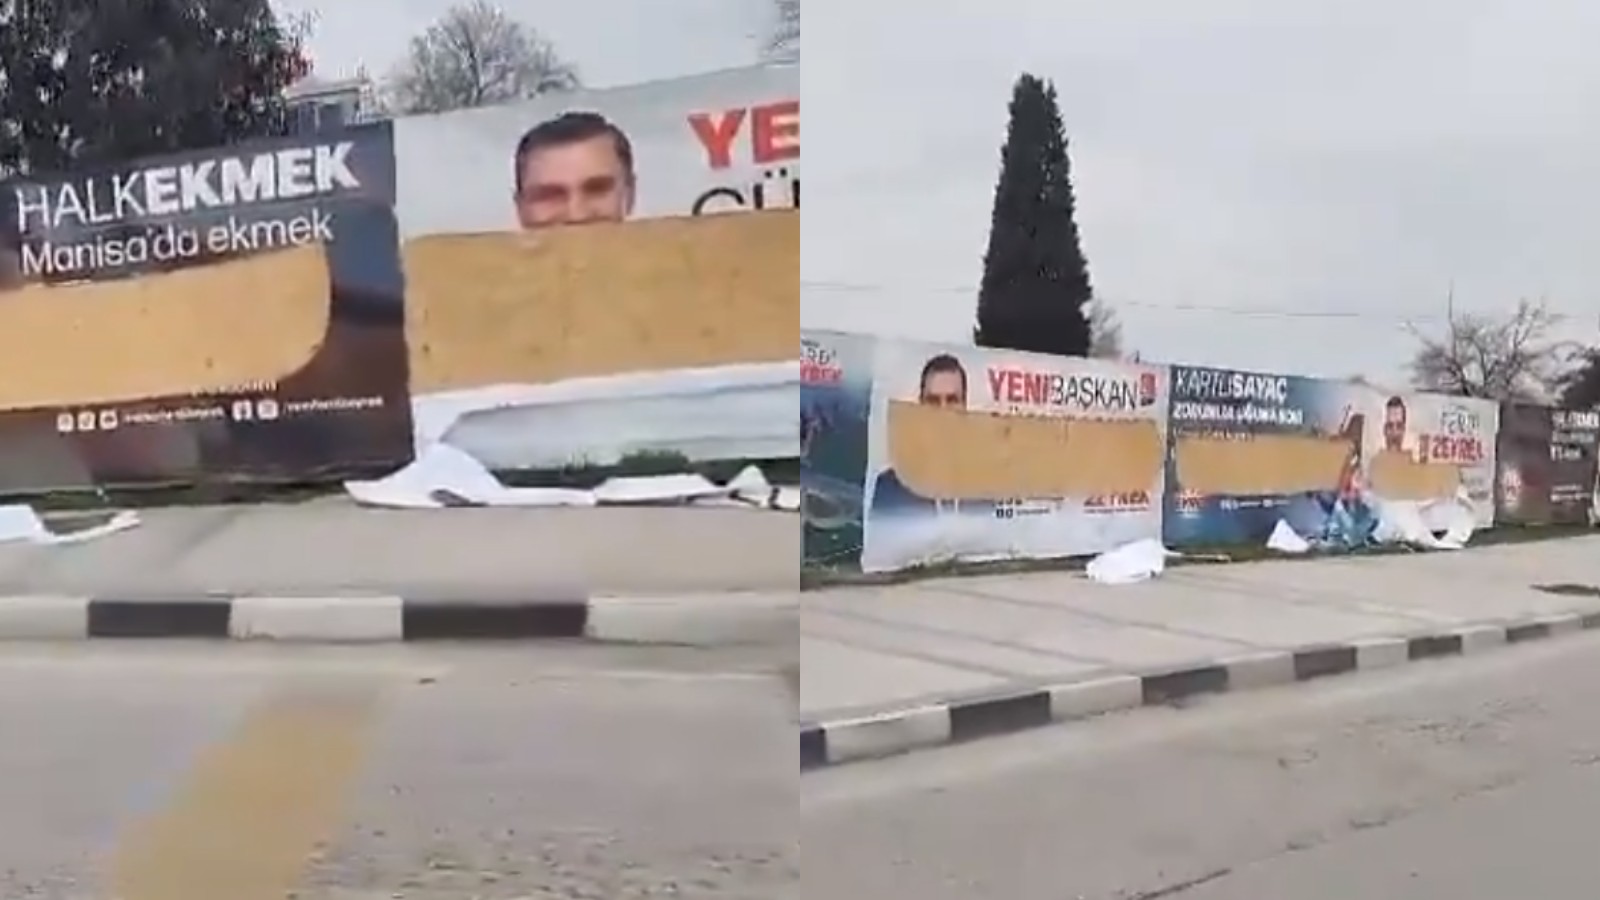 Manisa’da CHP'li adayın reklam panolarına saldırı gerçekleşti